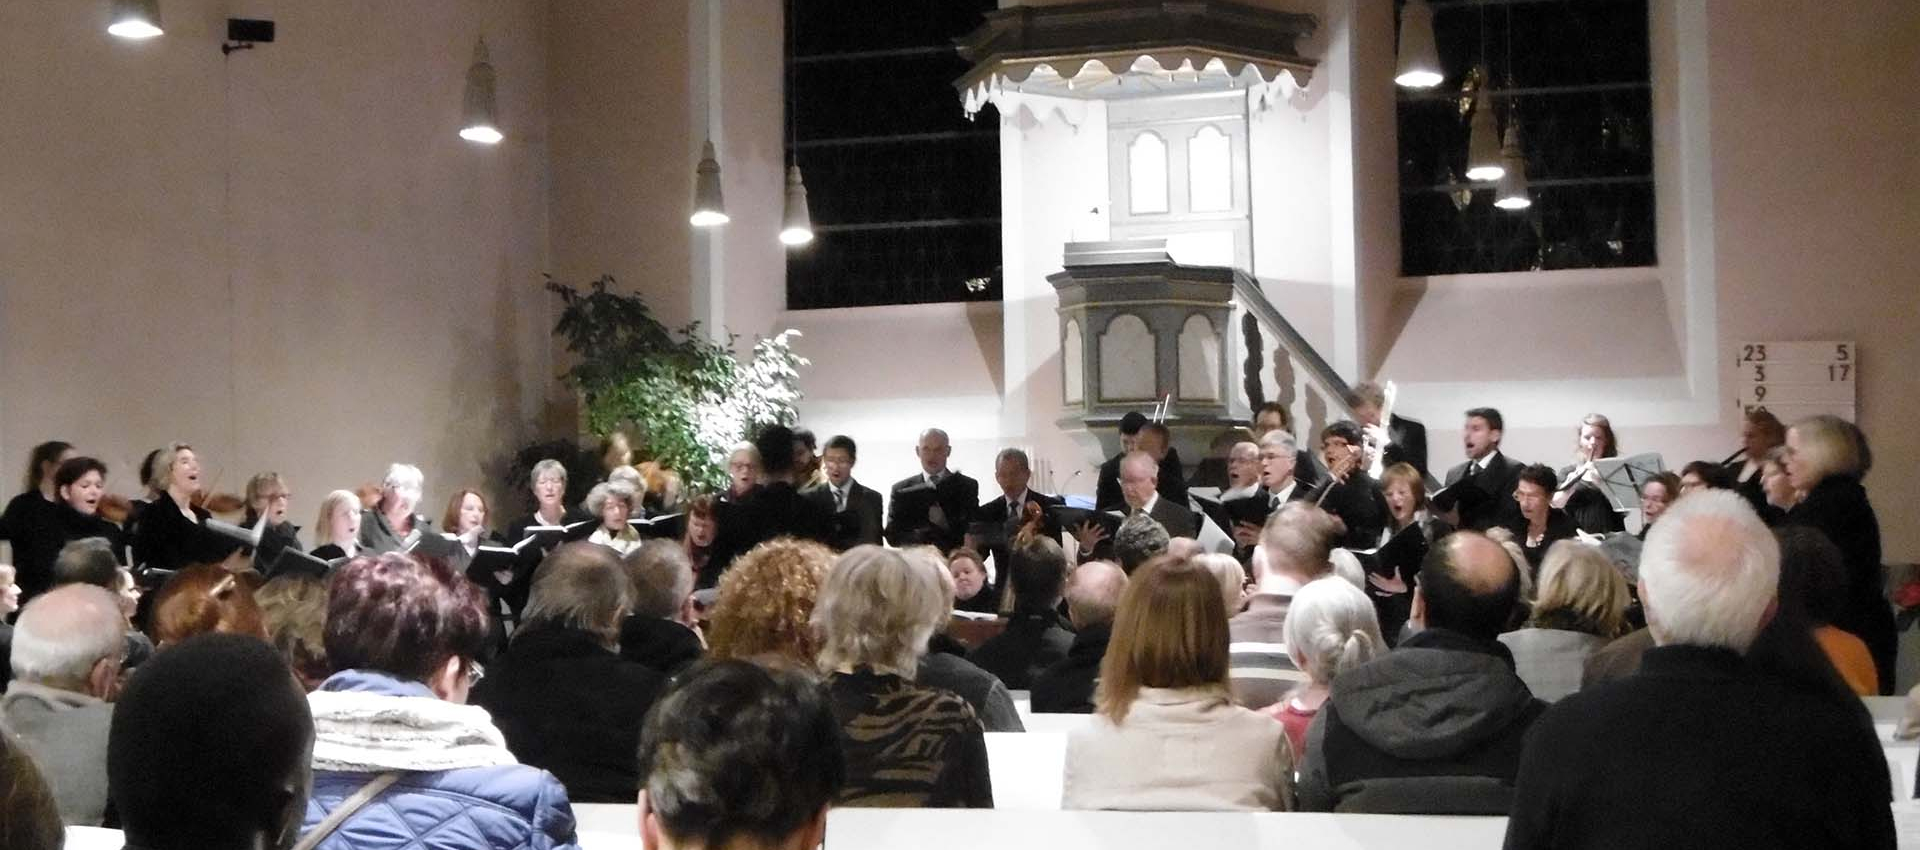 der Chor der evangelischen Kirche probt wöchentlich im Gemeindehaus Oberwinter